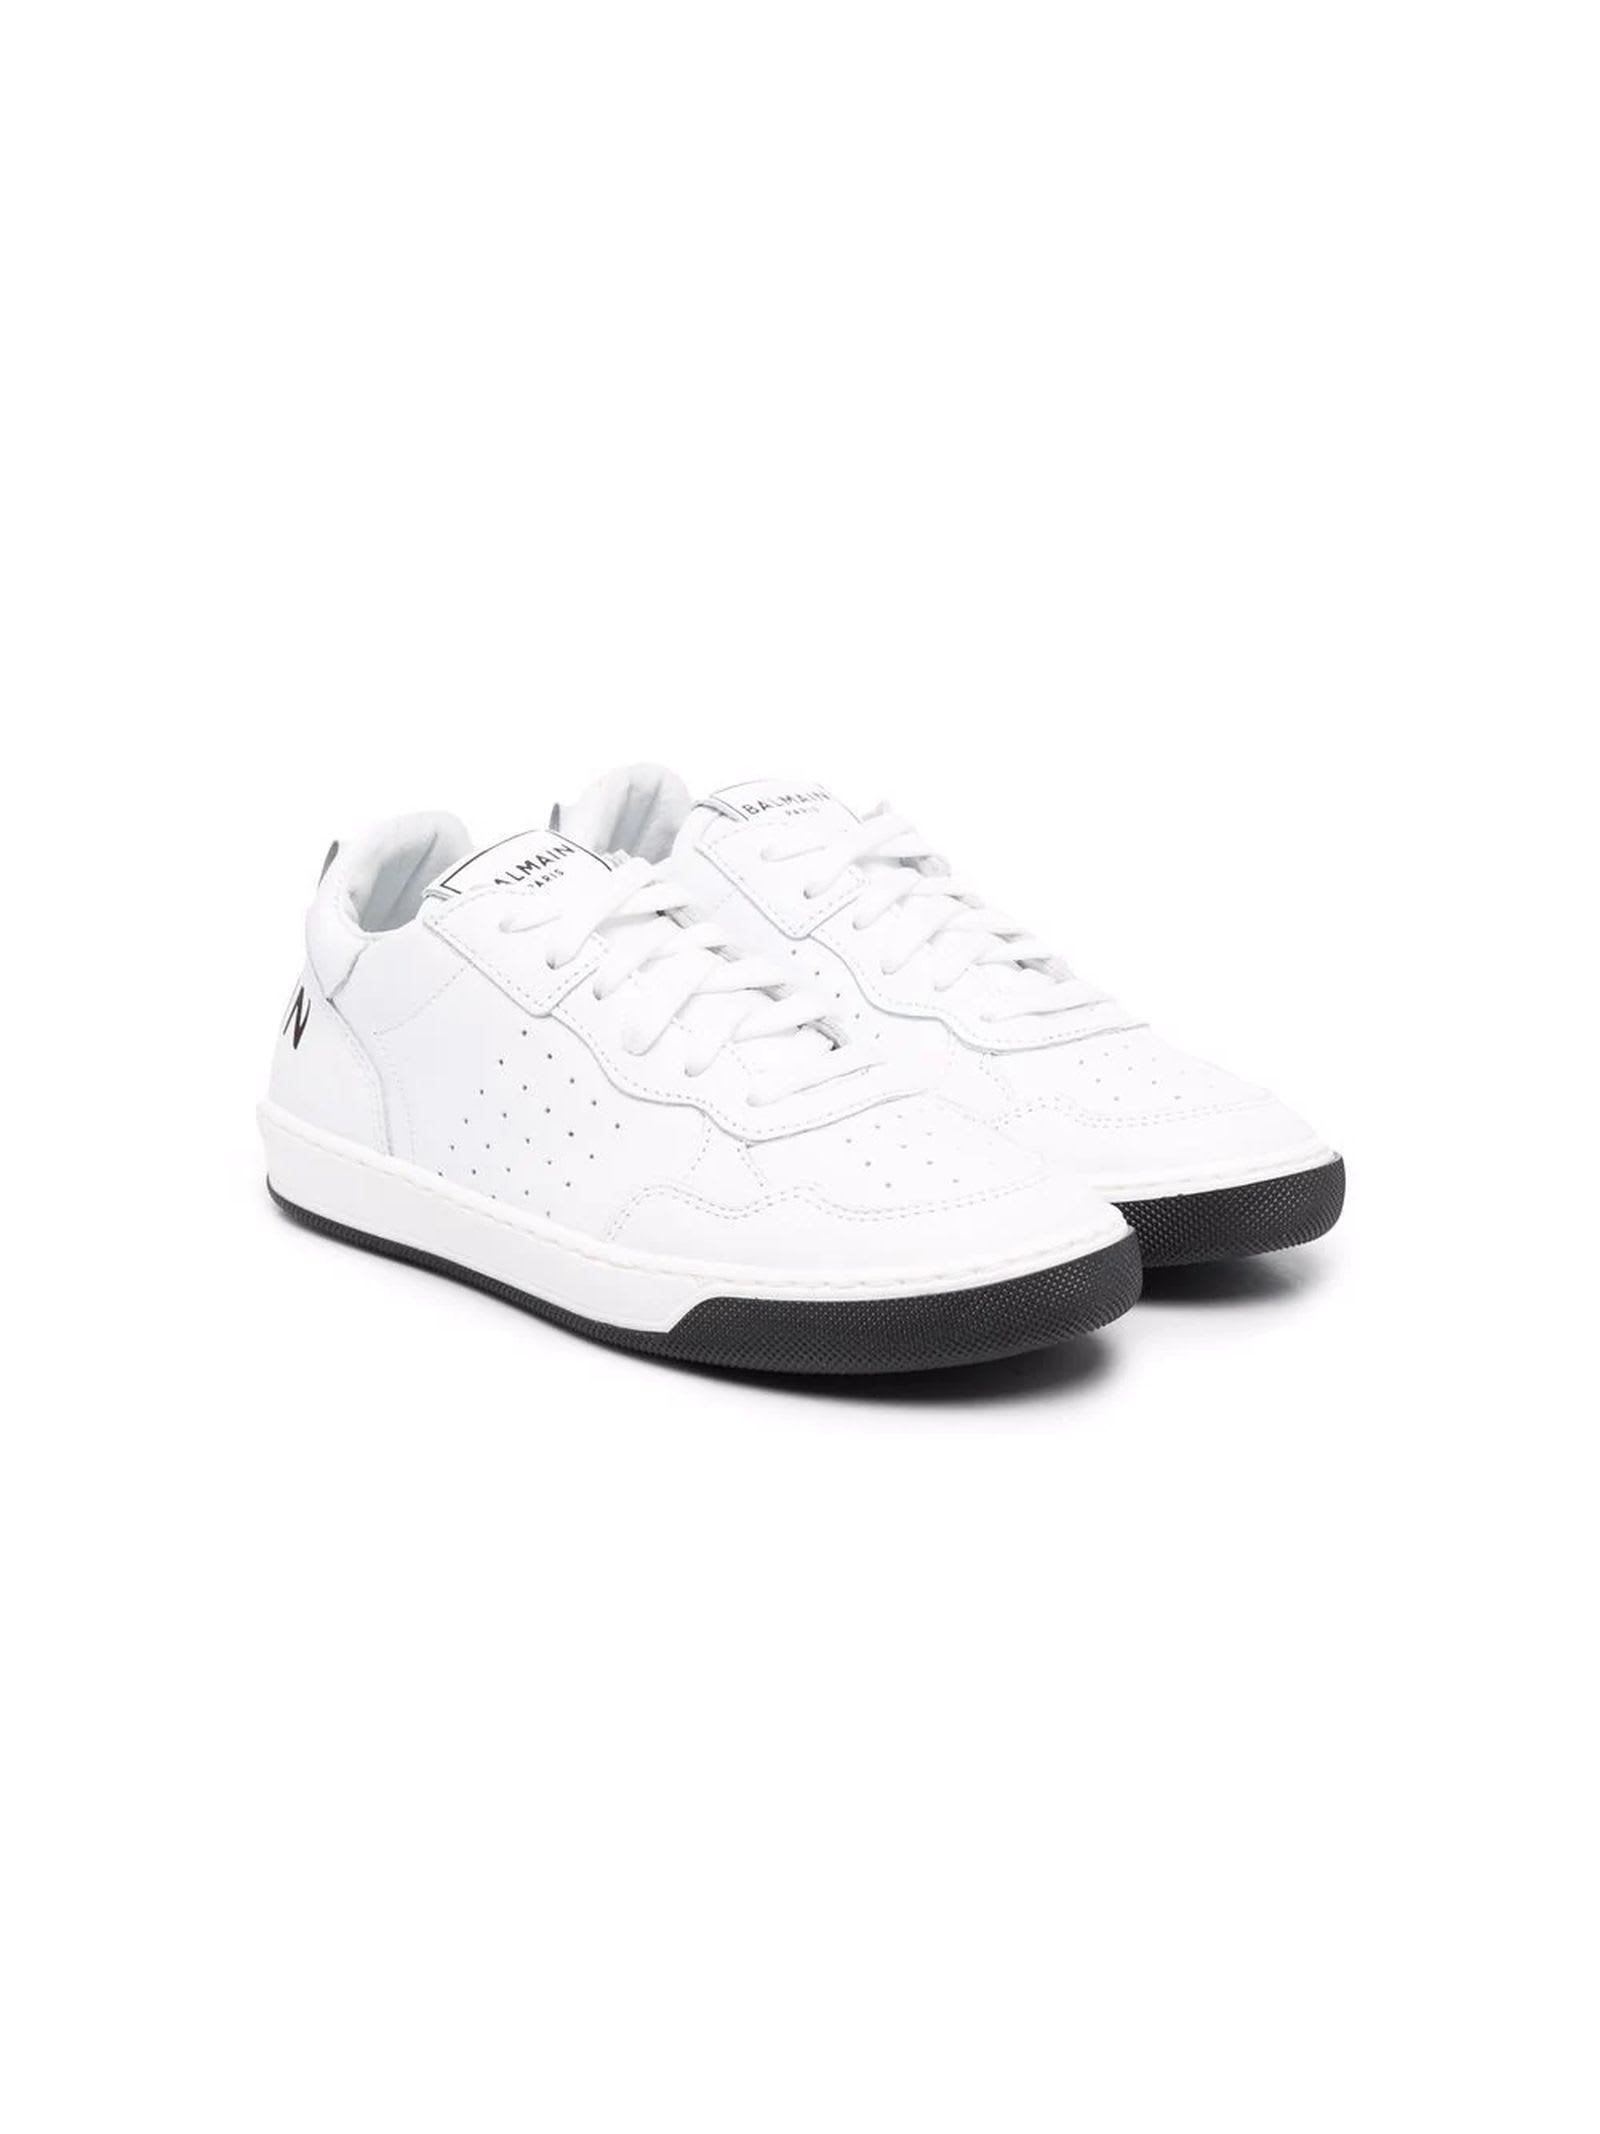 Balmain White Leather Sneakers